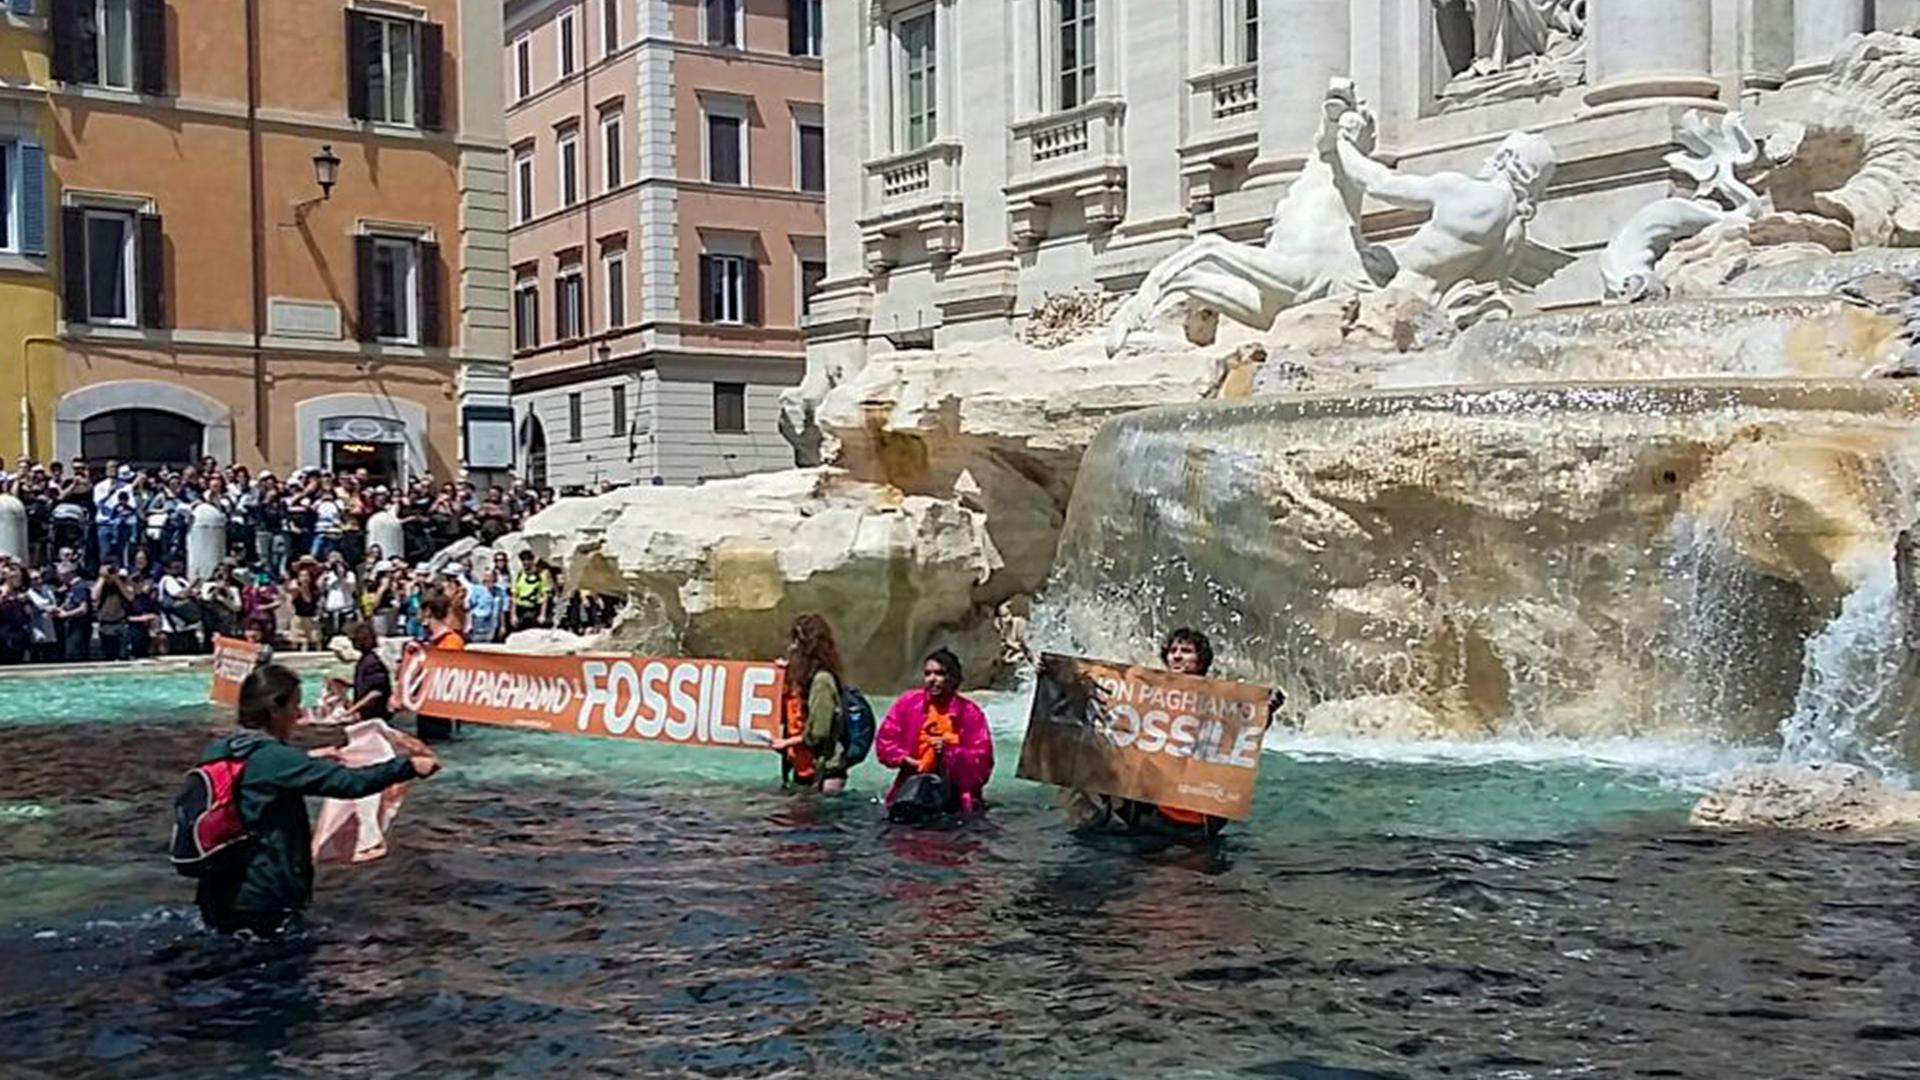 Aktivisten der Gruppe "Letzte Generation" stehen im Trevi-Brunnen, dessen Wasser sie schwarz gefärbt haben. Sie halten Banner hoch, auf denen unter anderem steht: "Non pagiame Fossile", also übersetzt etwa: "Wir wollen nicht für fossile Energien bezahlen".